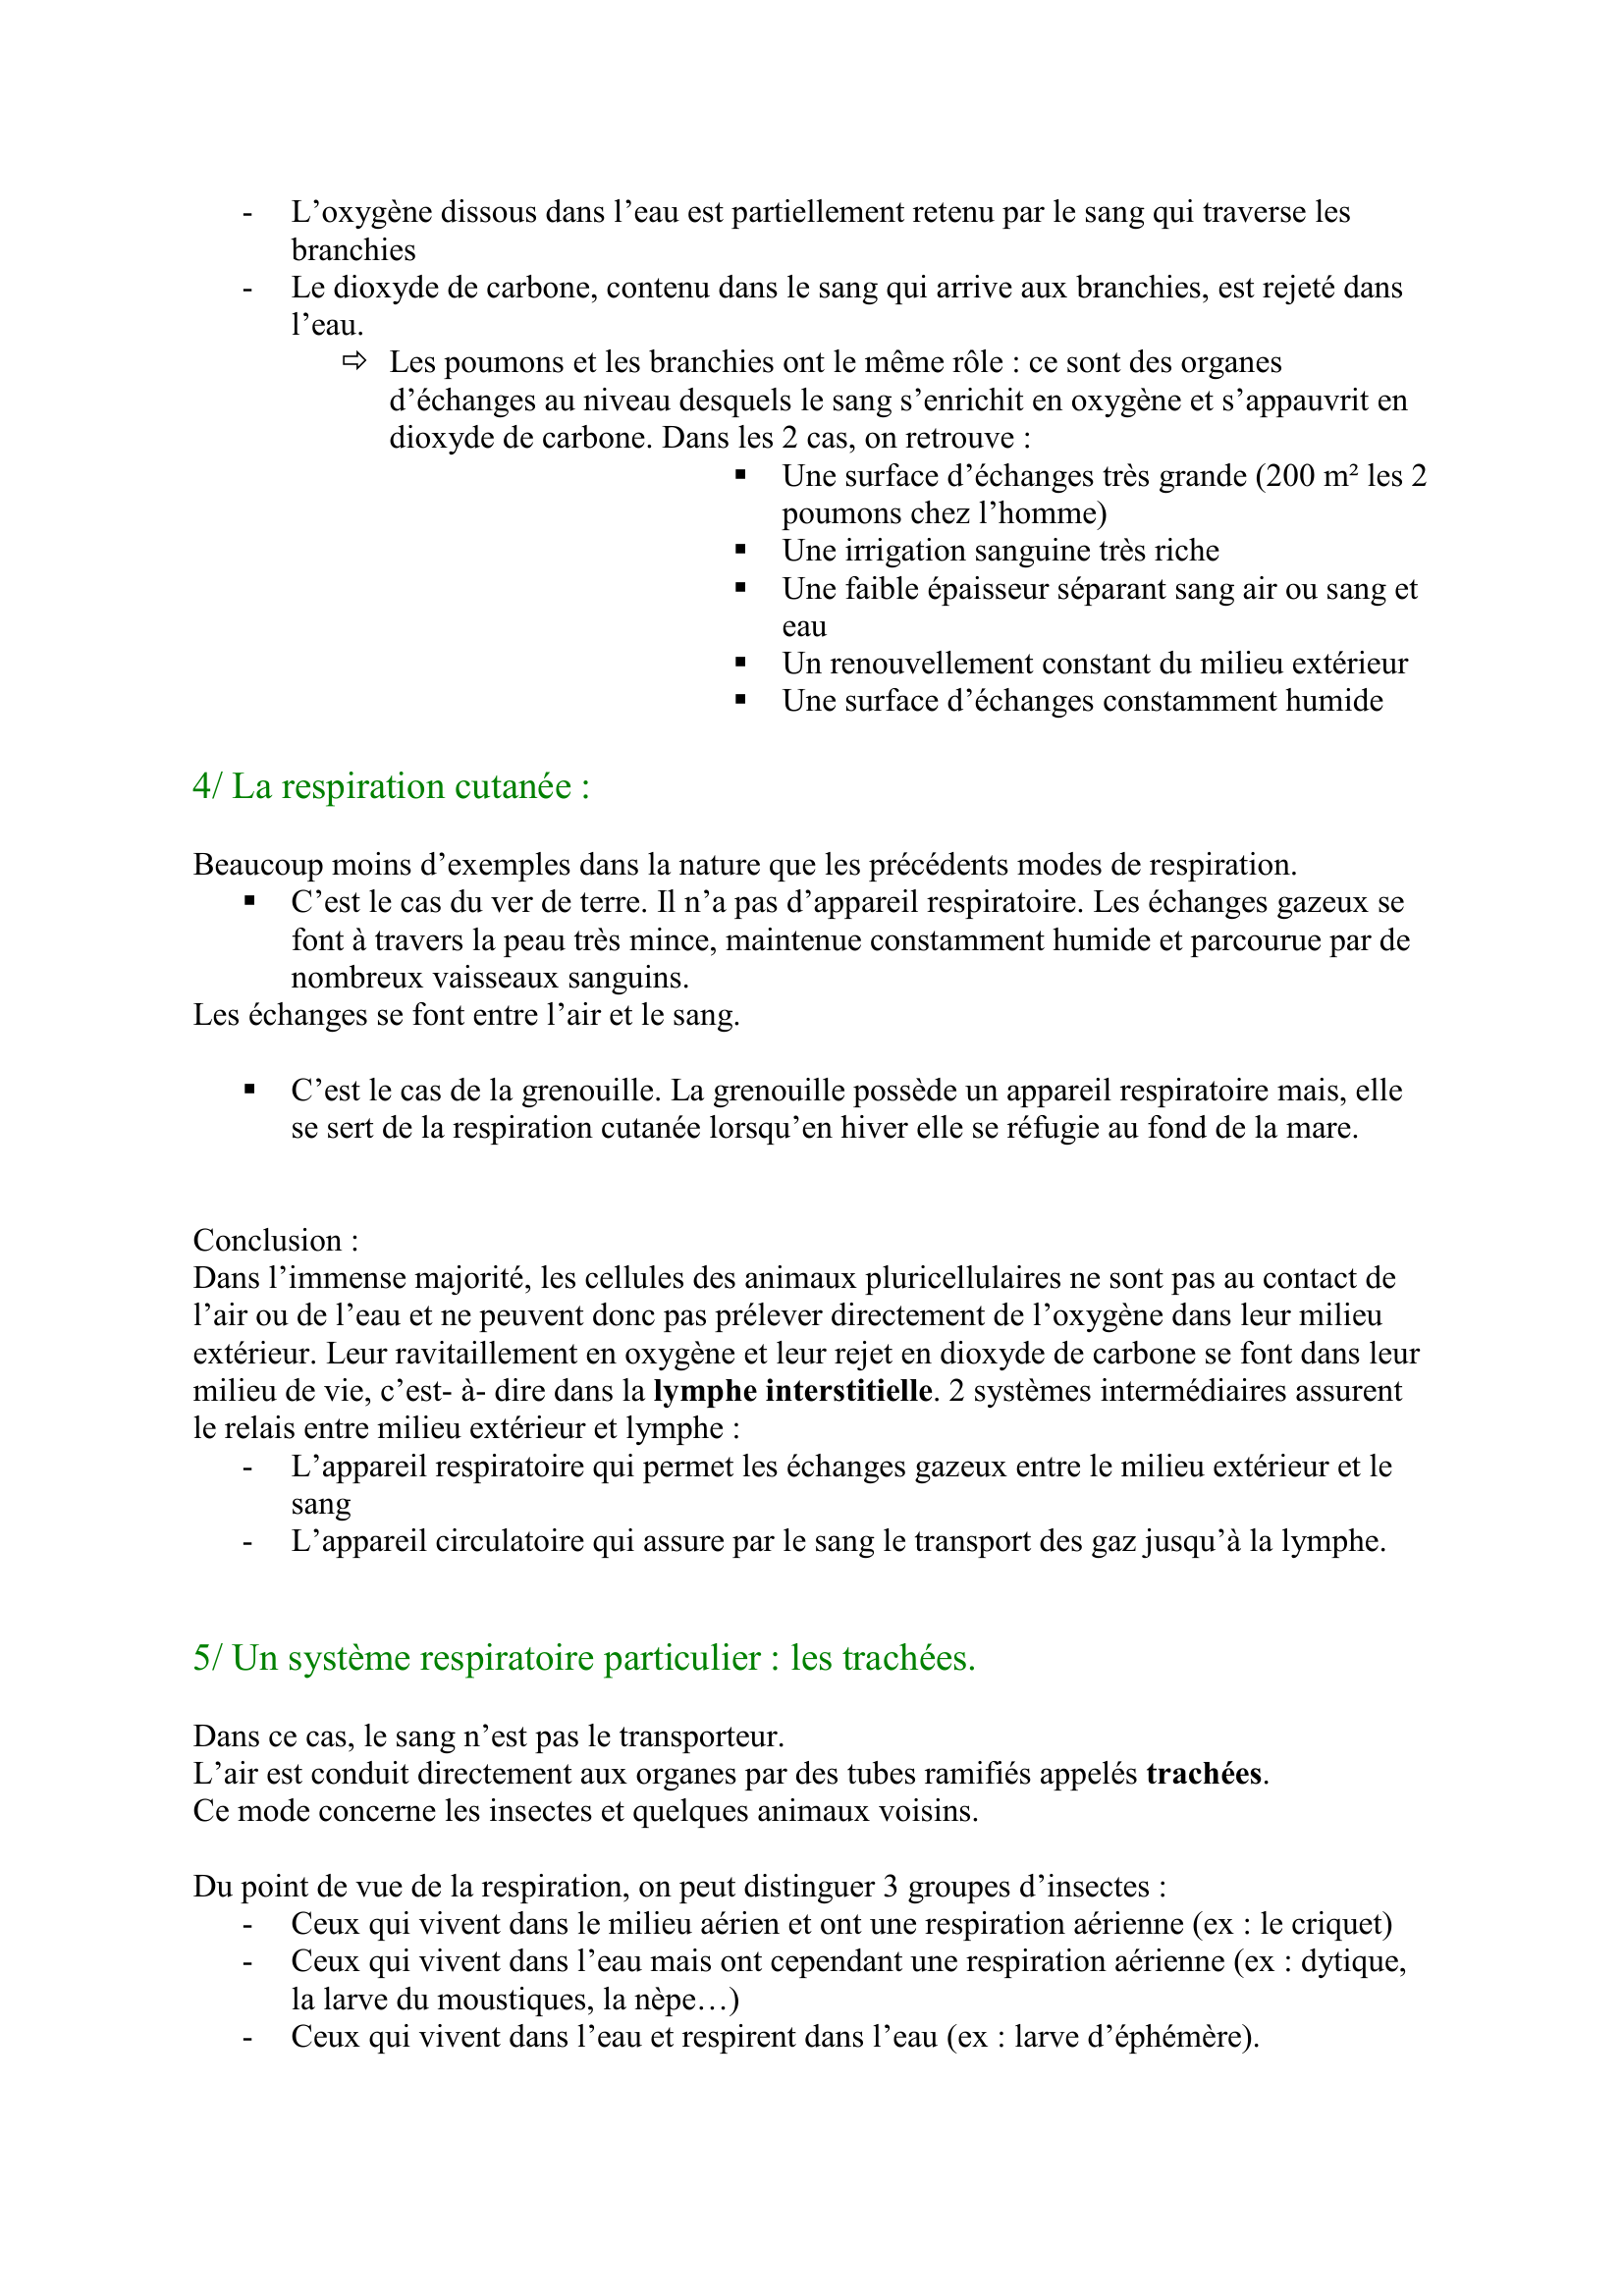 Prévisualisation du document Le vivant : Fonctions de nutrition :
La respiration
Synthèse construite par Sylvain
sylvain.